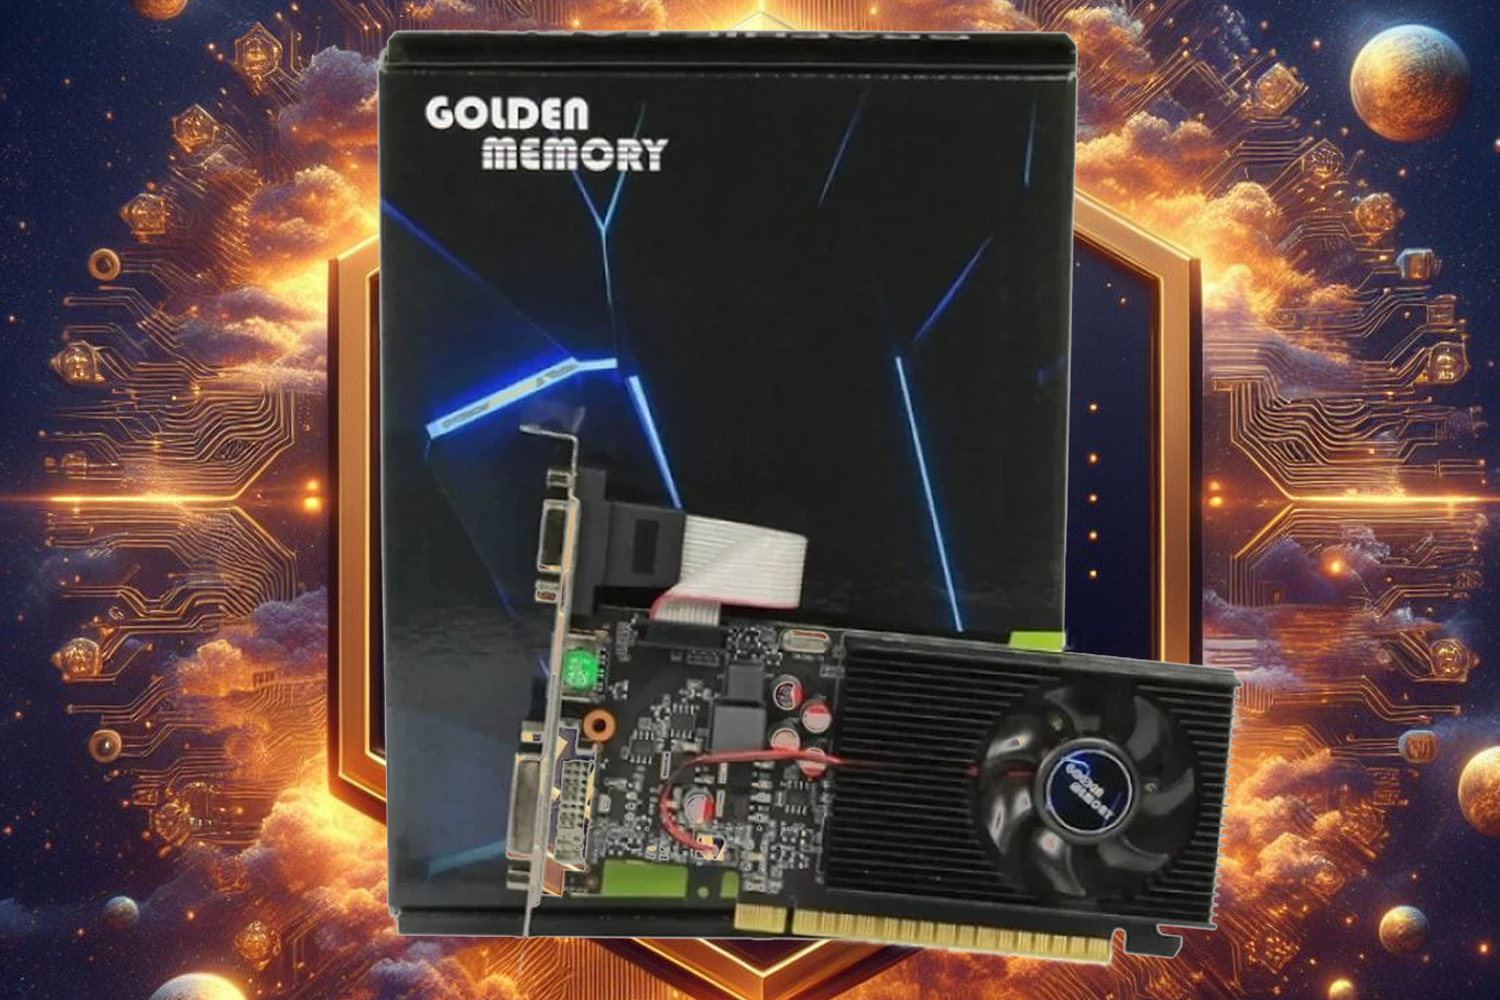 Golden-Memory-GT730-2Gb